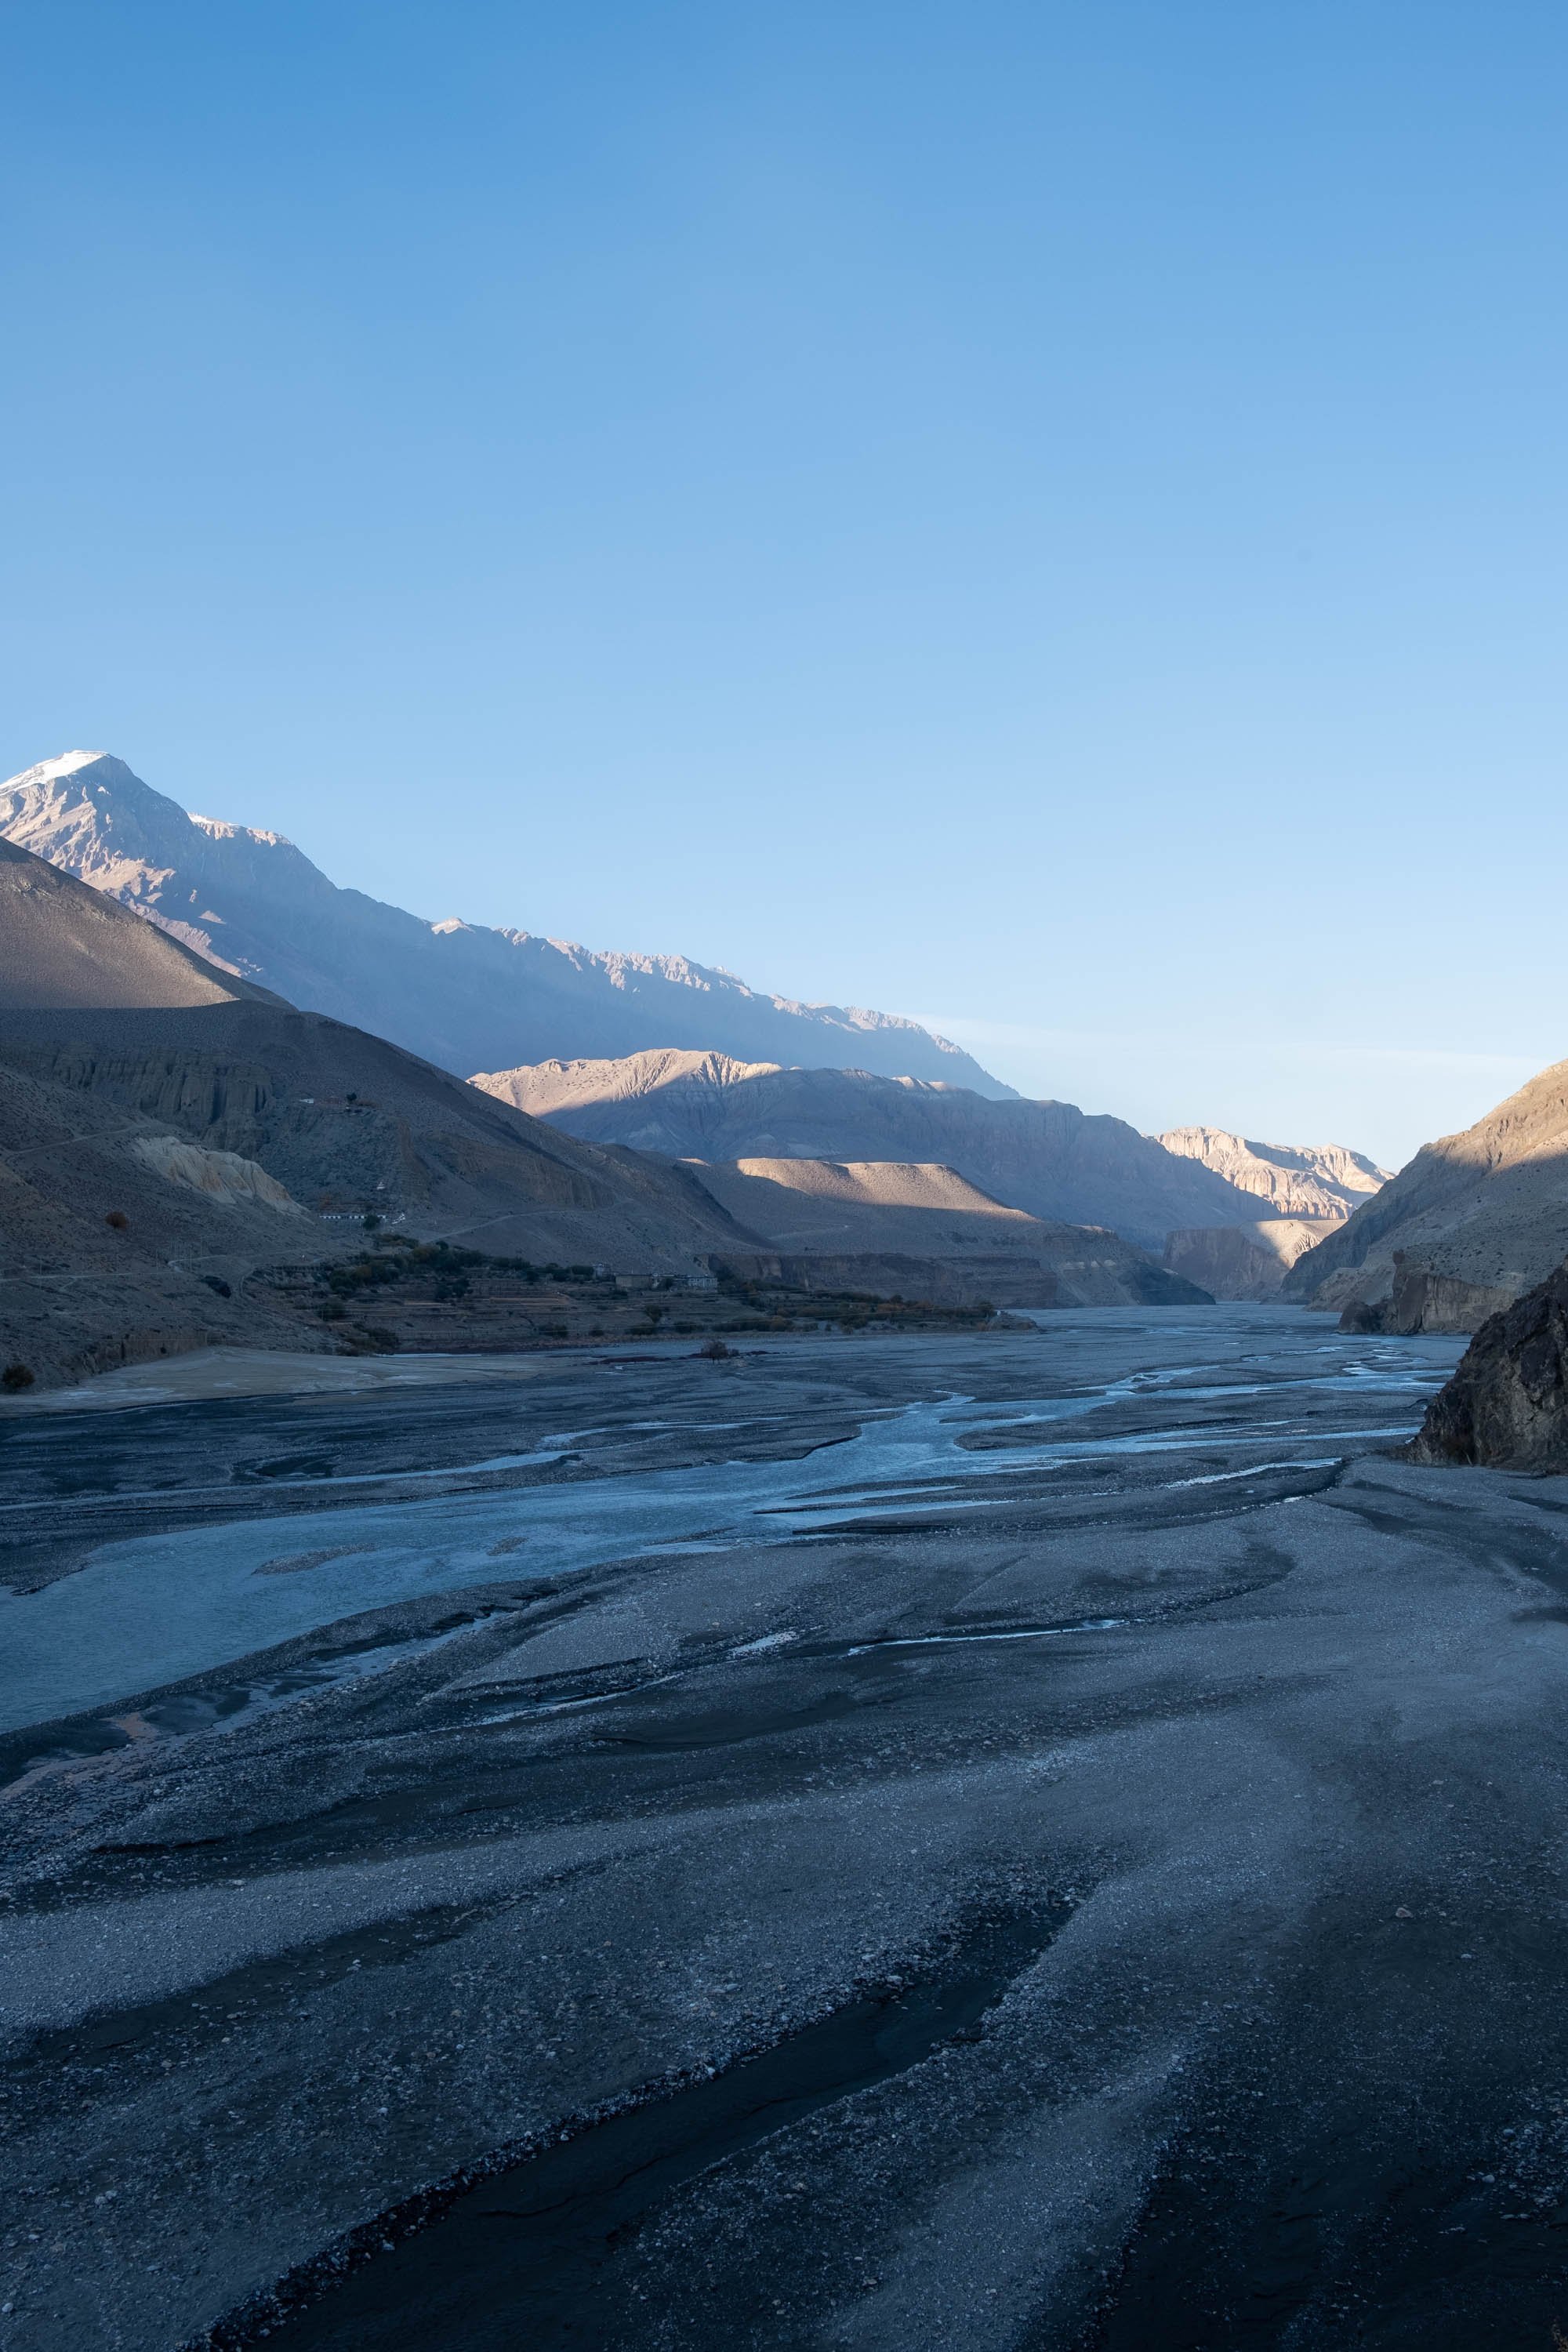  Kali-Gandaki valley, Mustang district 